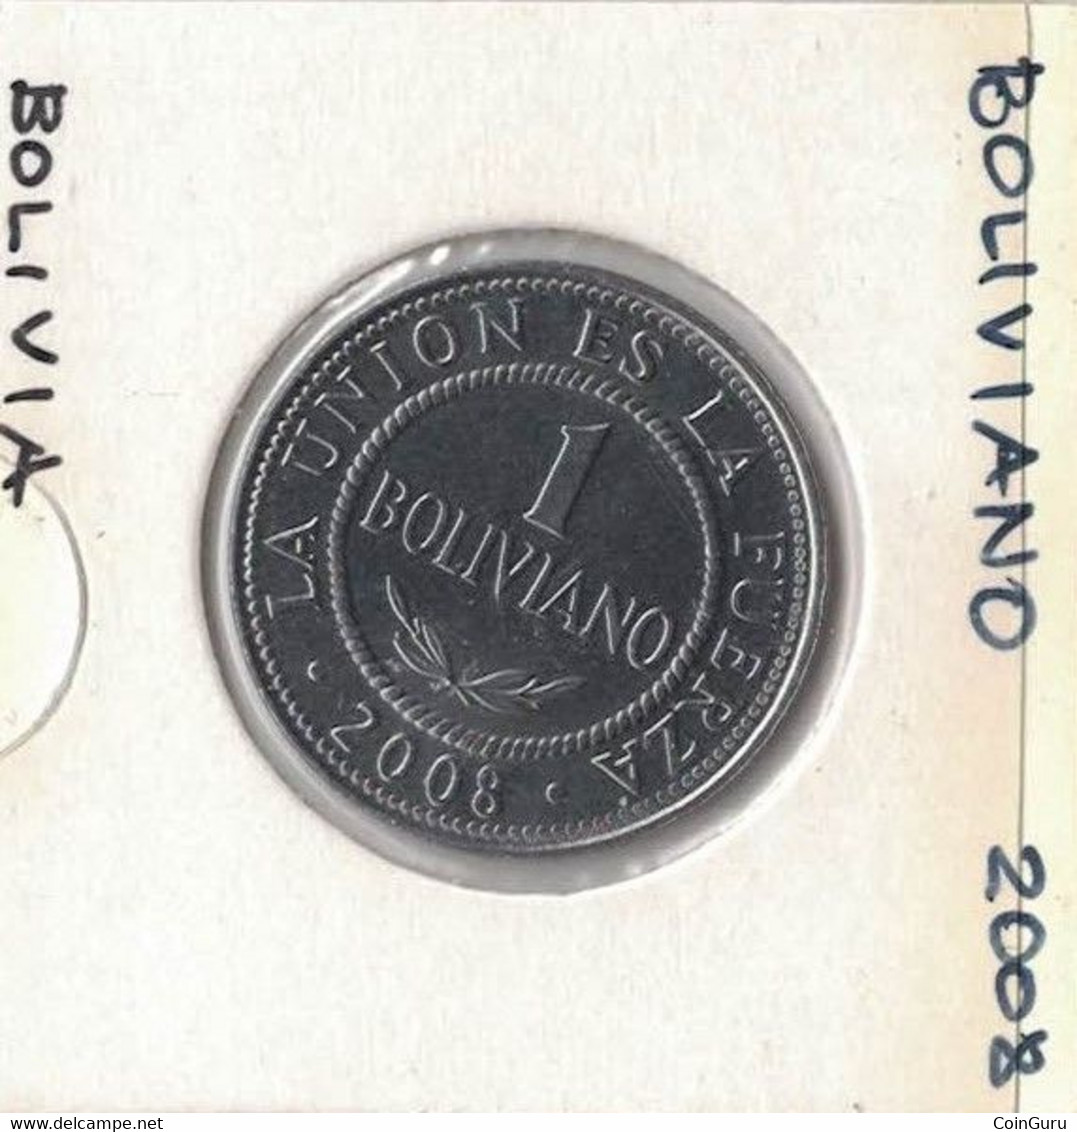 Bolivia  20 Or 50 Centavos Or  1 Or 5 Bolivianos, 2005 To 2008, Price Per Coin - Bolivia